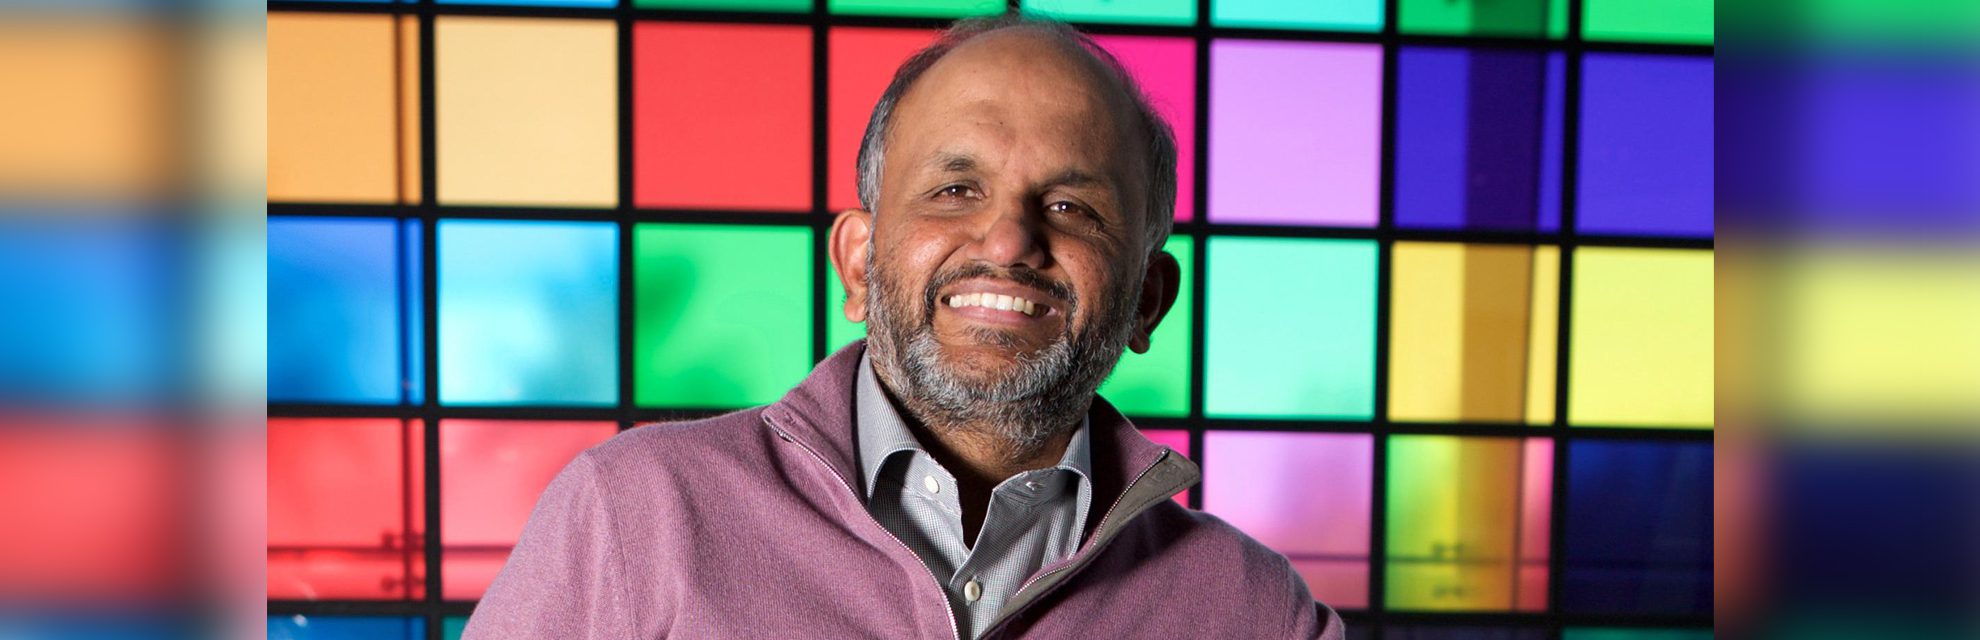 Shantanu Narayen: el director ejecutivo que es el corazón y el alma de Adobe